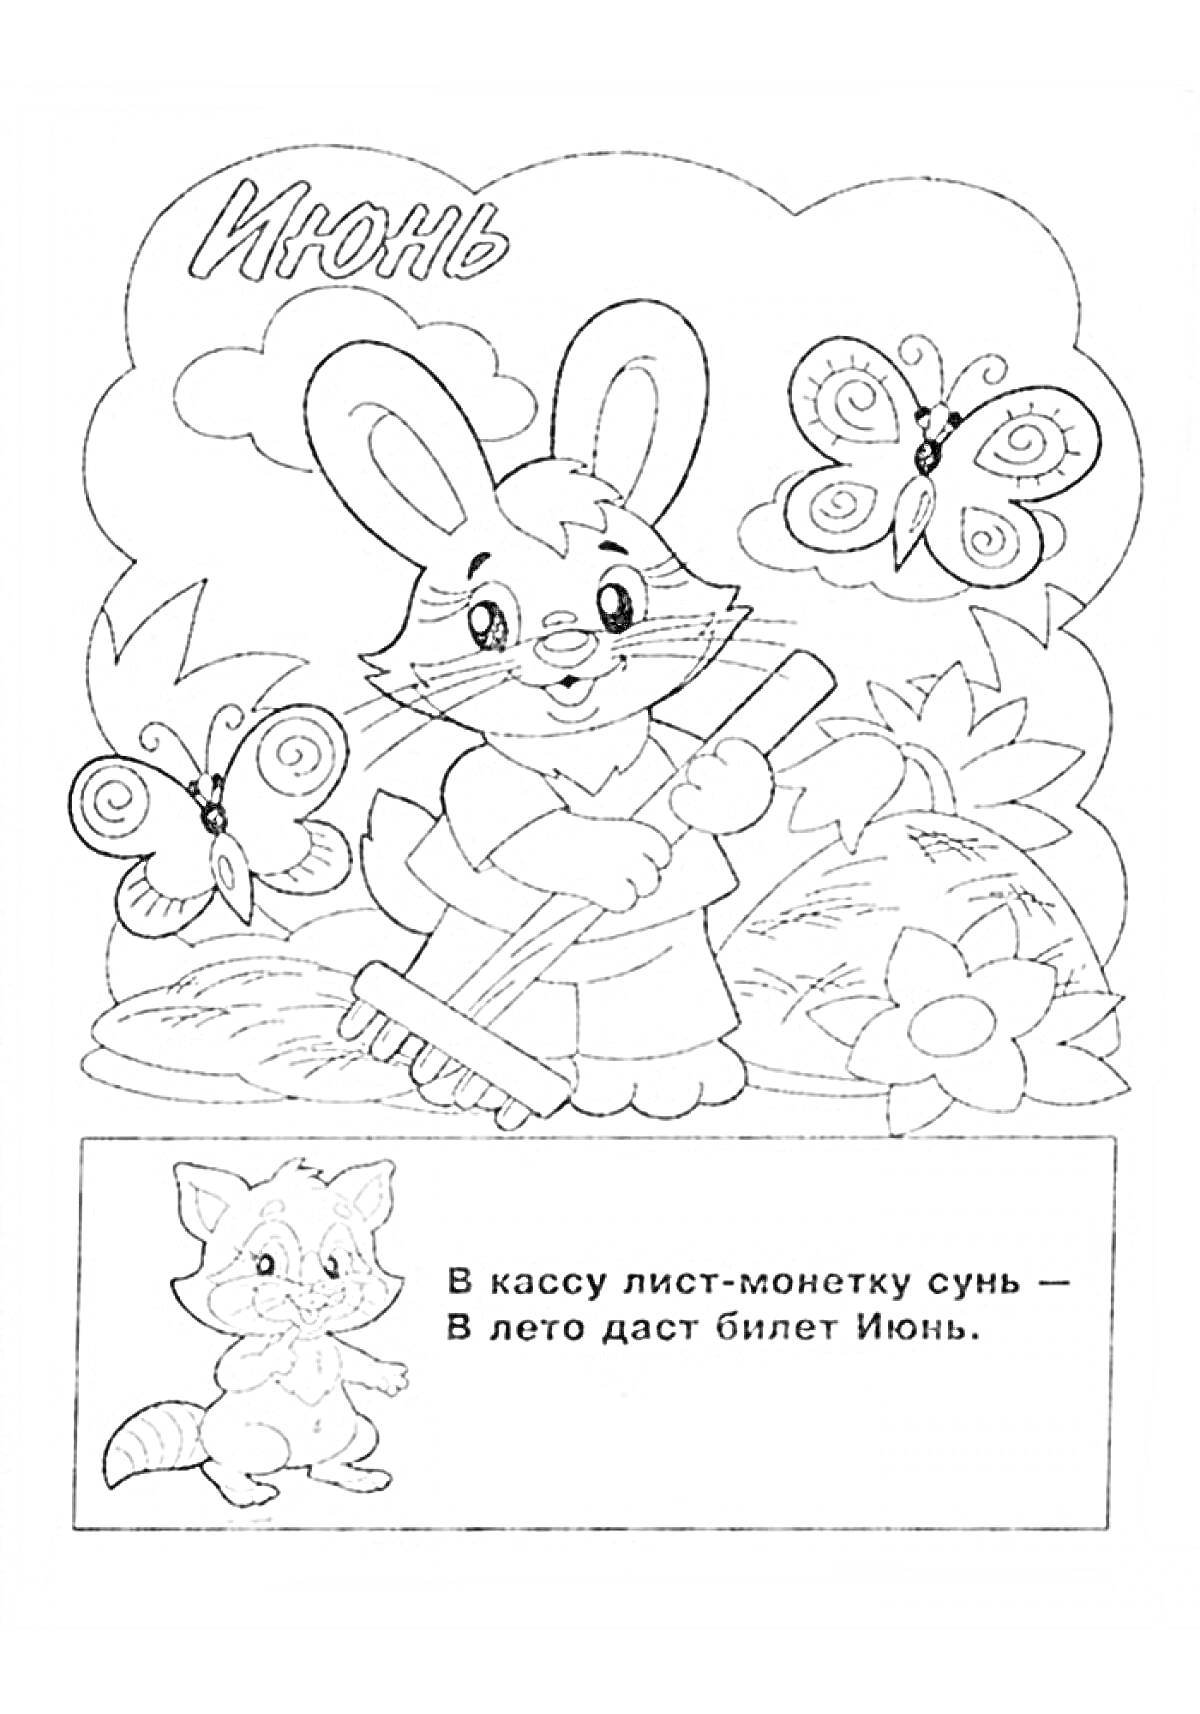 Кролик с граблями на фоне цветов и бабочек, текст с поэмой про июнь